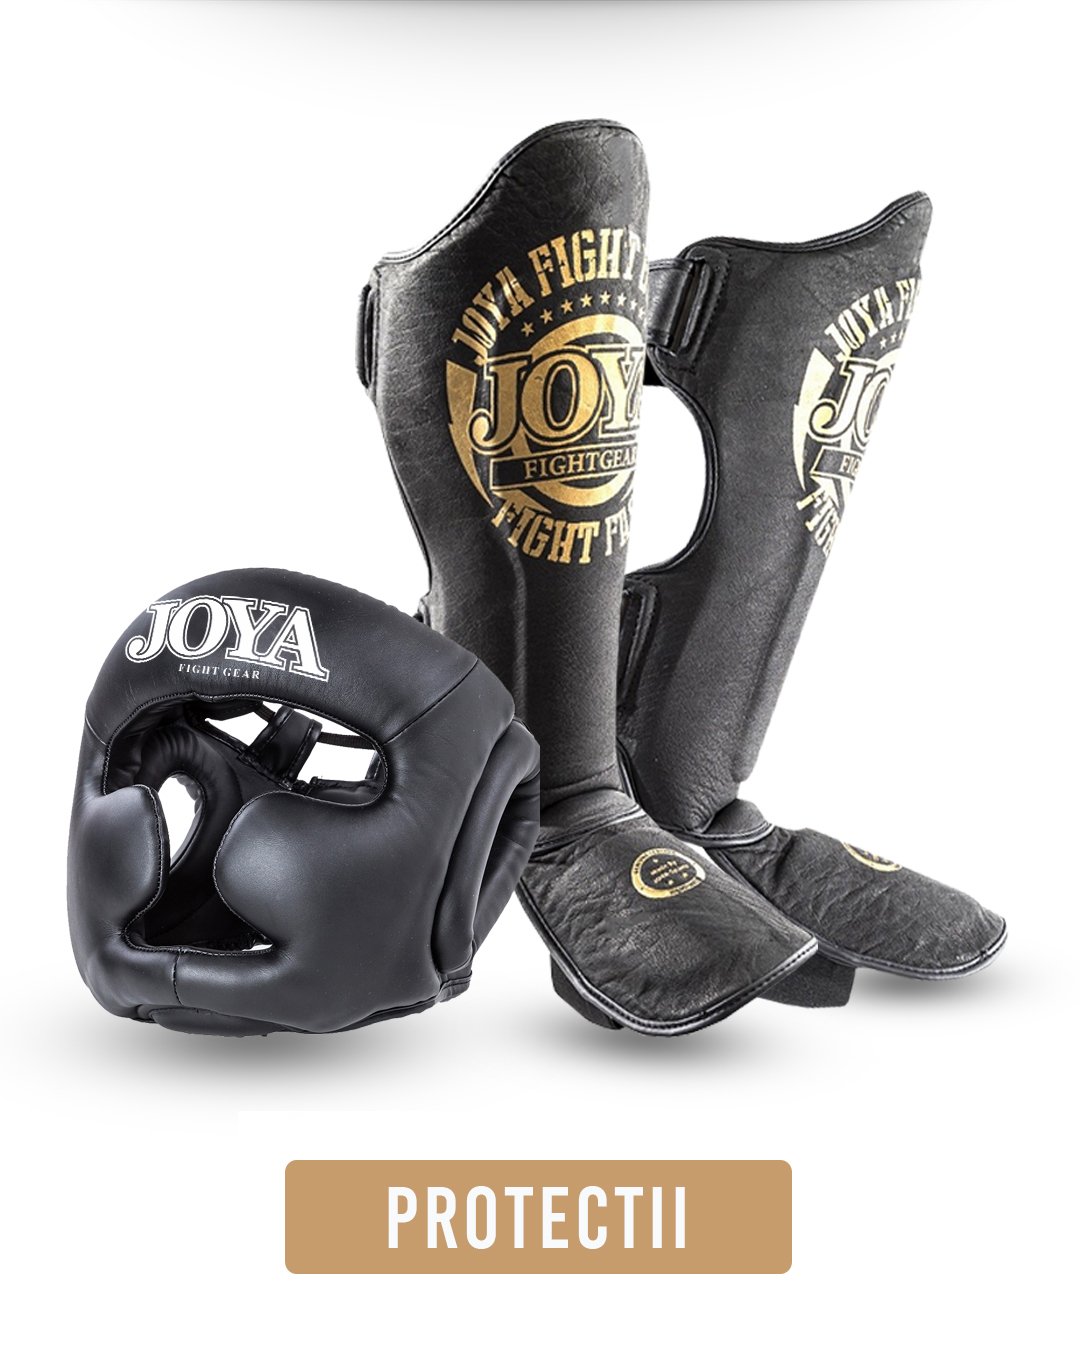 Protectii Kickbox, MMA si Box